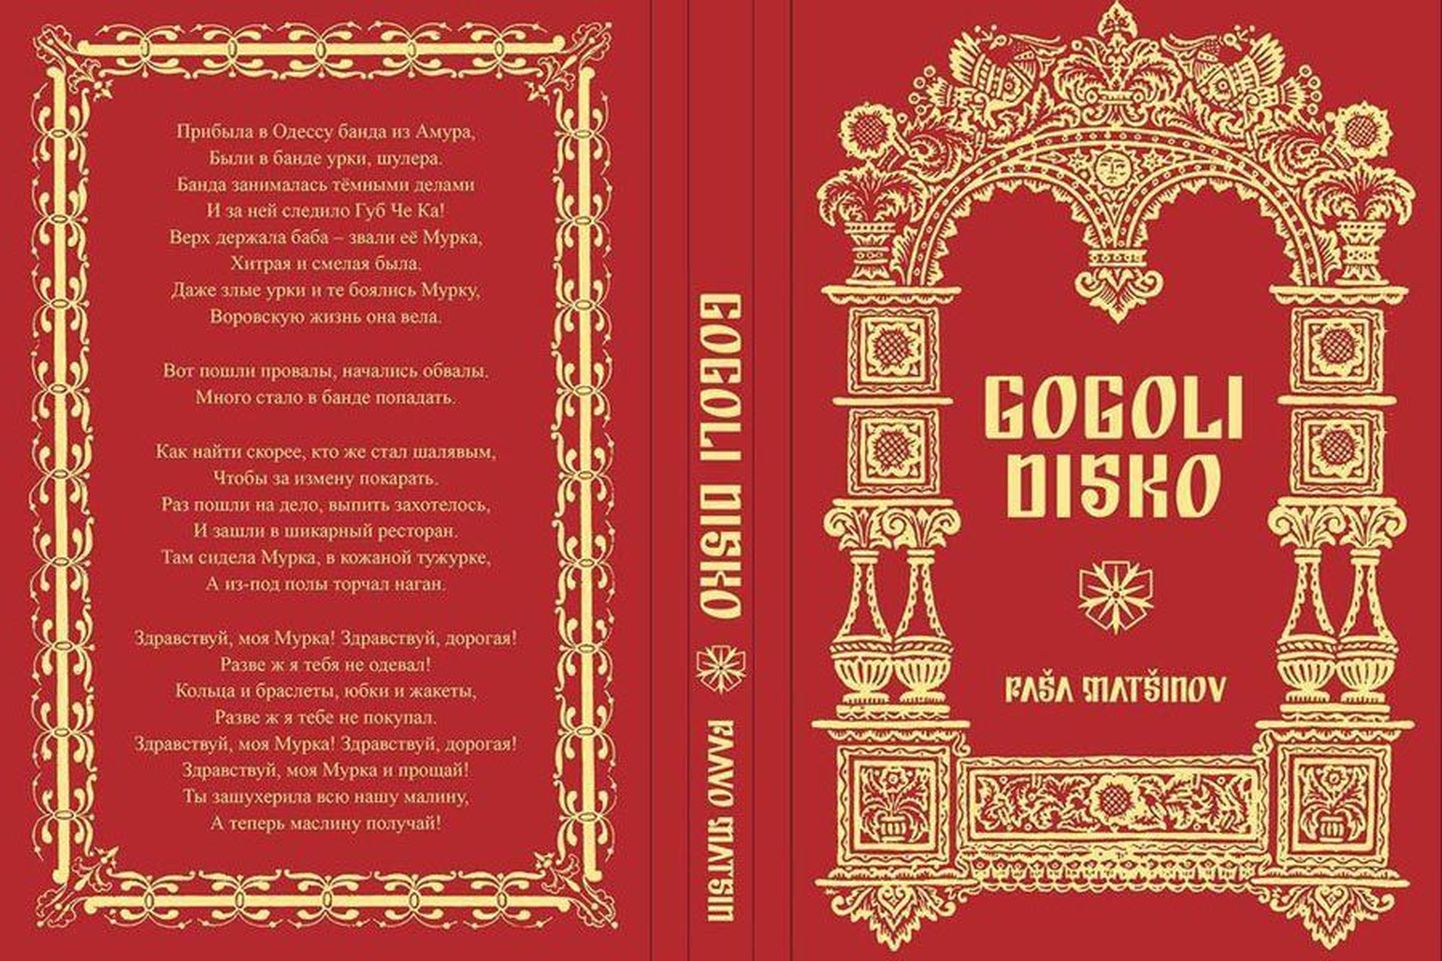 Paavo Matsini raamat «Gogoli disko» pälvis ilukirjandusliku proosa arvestuses Kultuurkapitali kirjanduse sihtkapitali preemia.